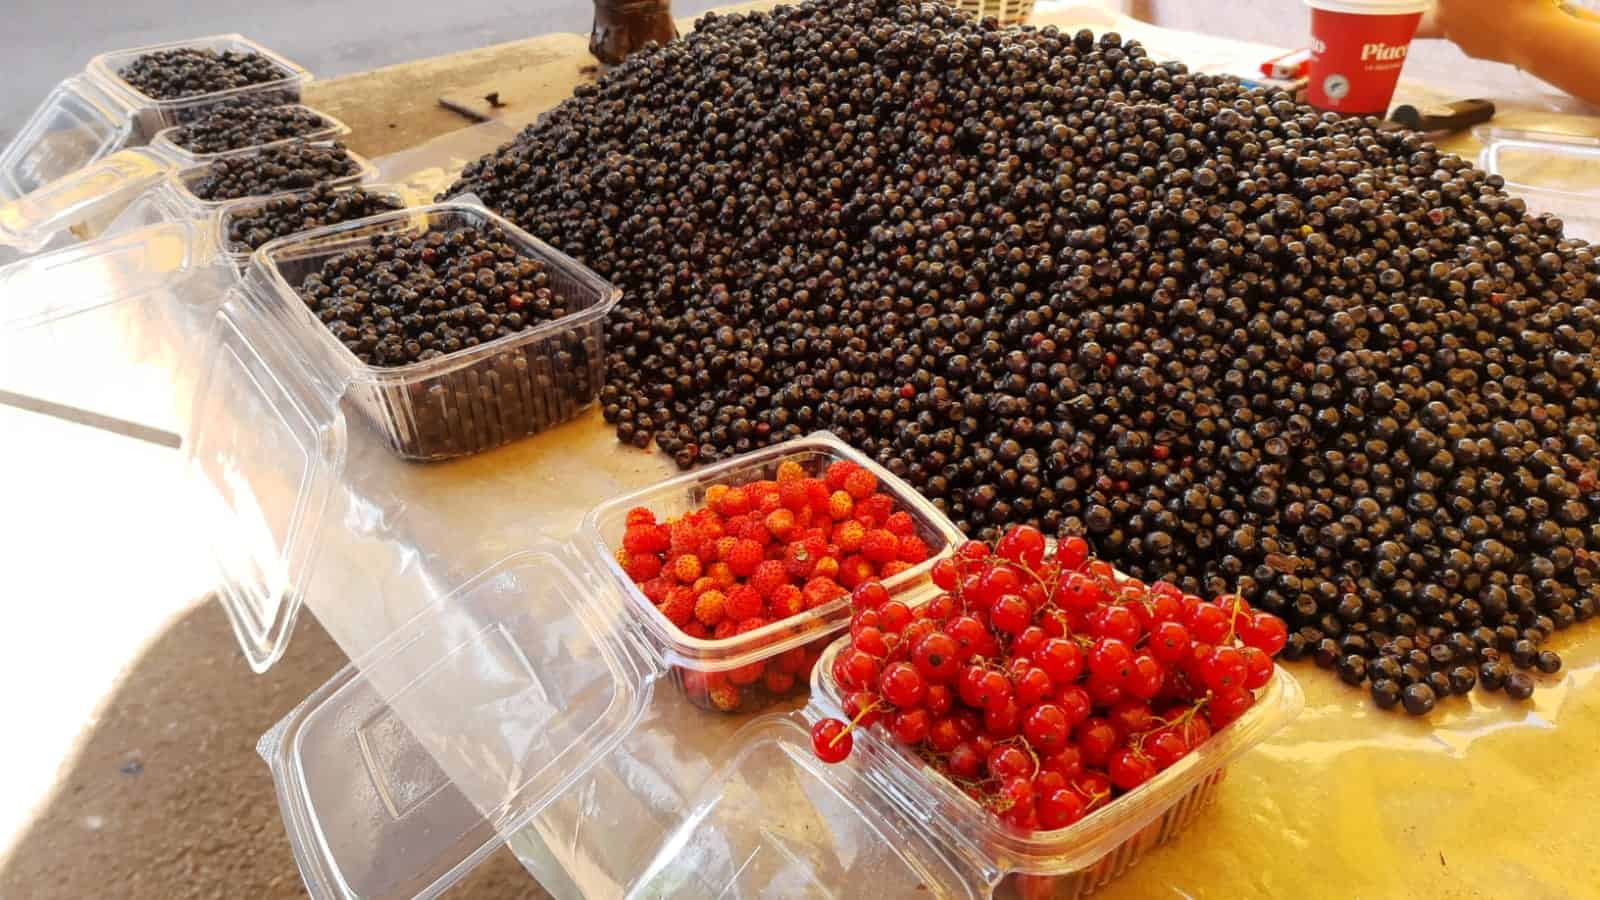 afine culese de la gura râului mai ieftine decât anul trecut și fragi cu 250 de lei kilogramul, în piața cibin (foto)